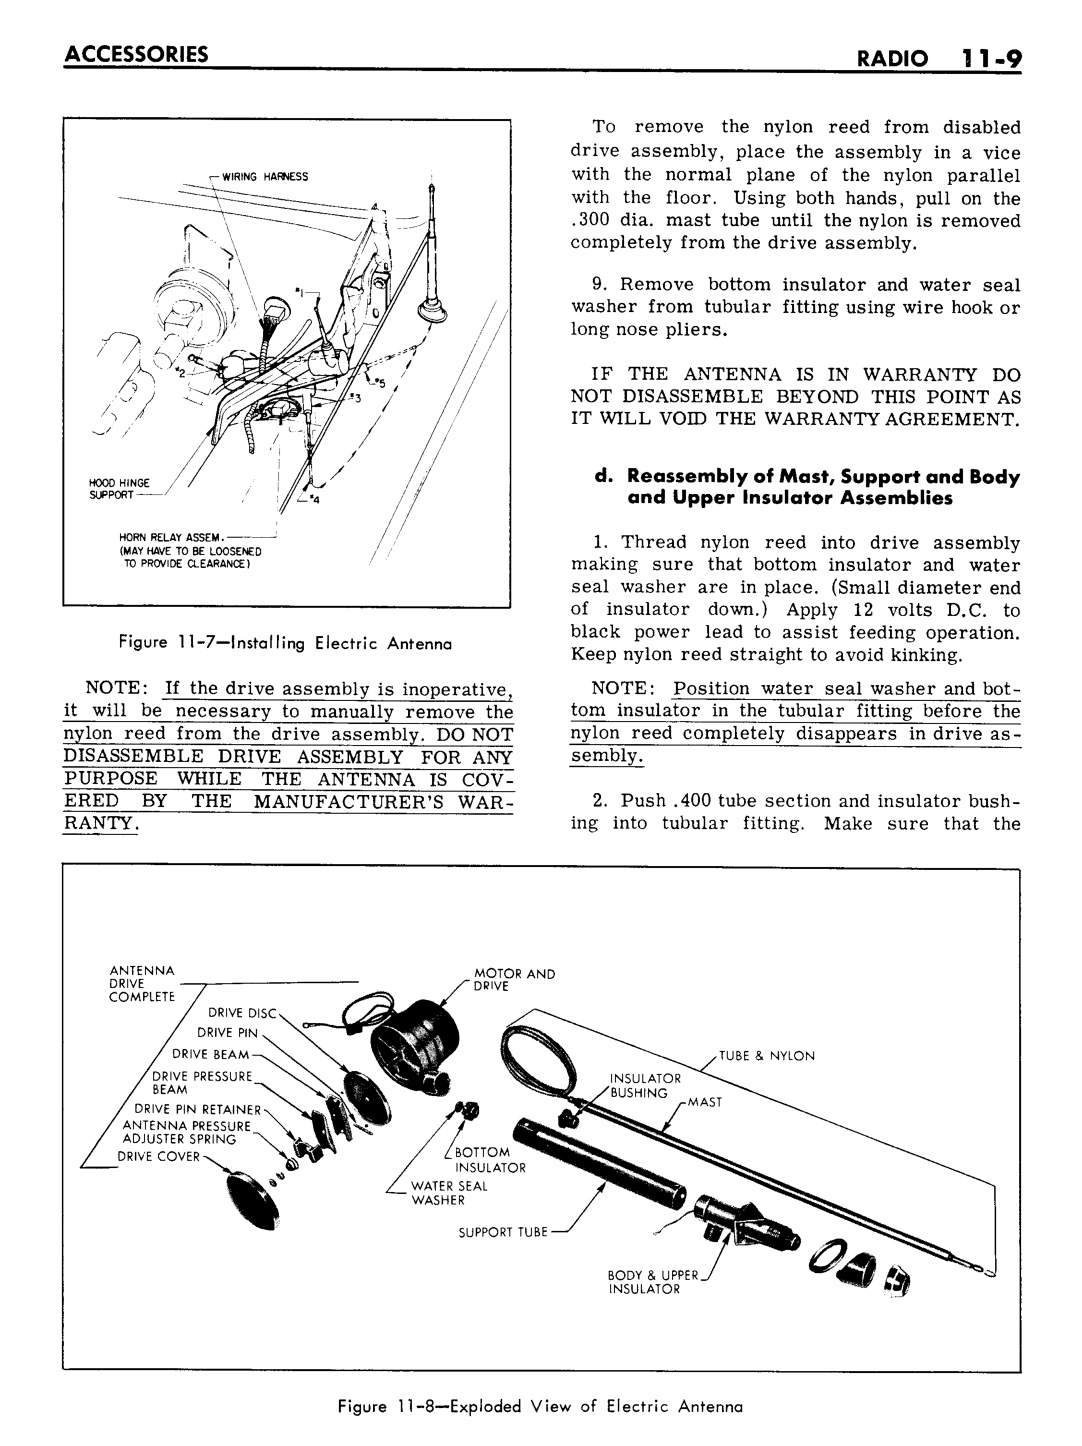 n_11 1961 Buick Shop Manual - Accessories-009-009.jpg